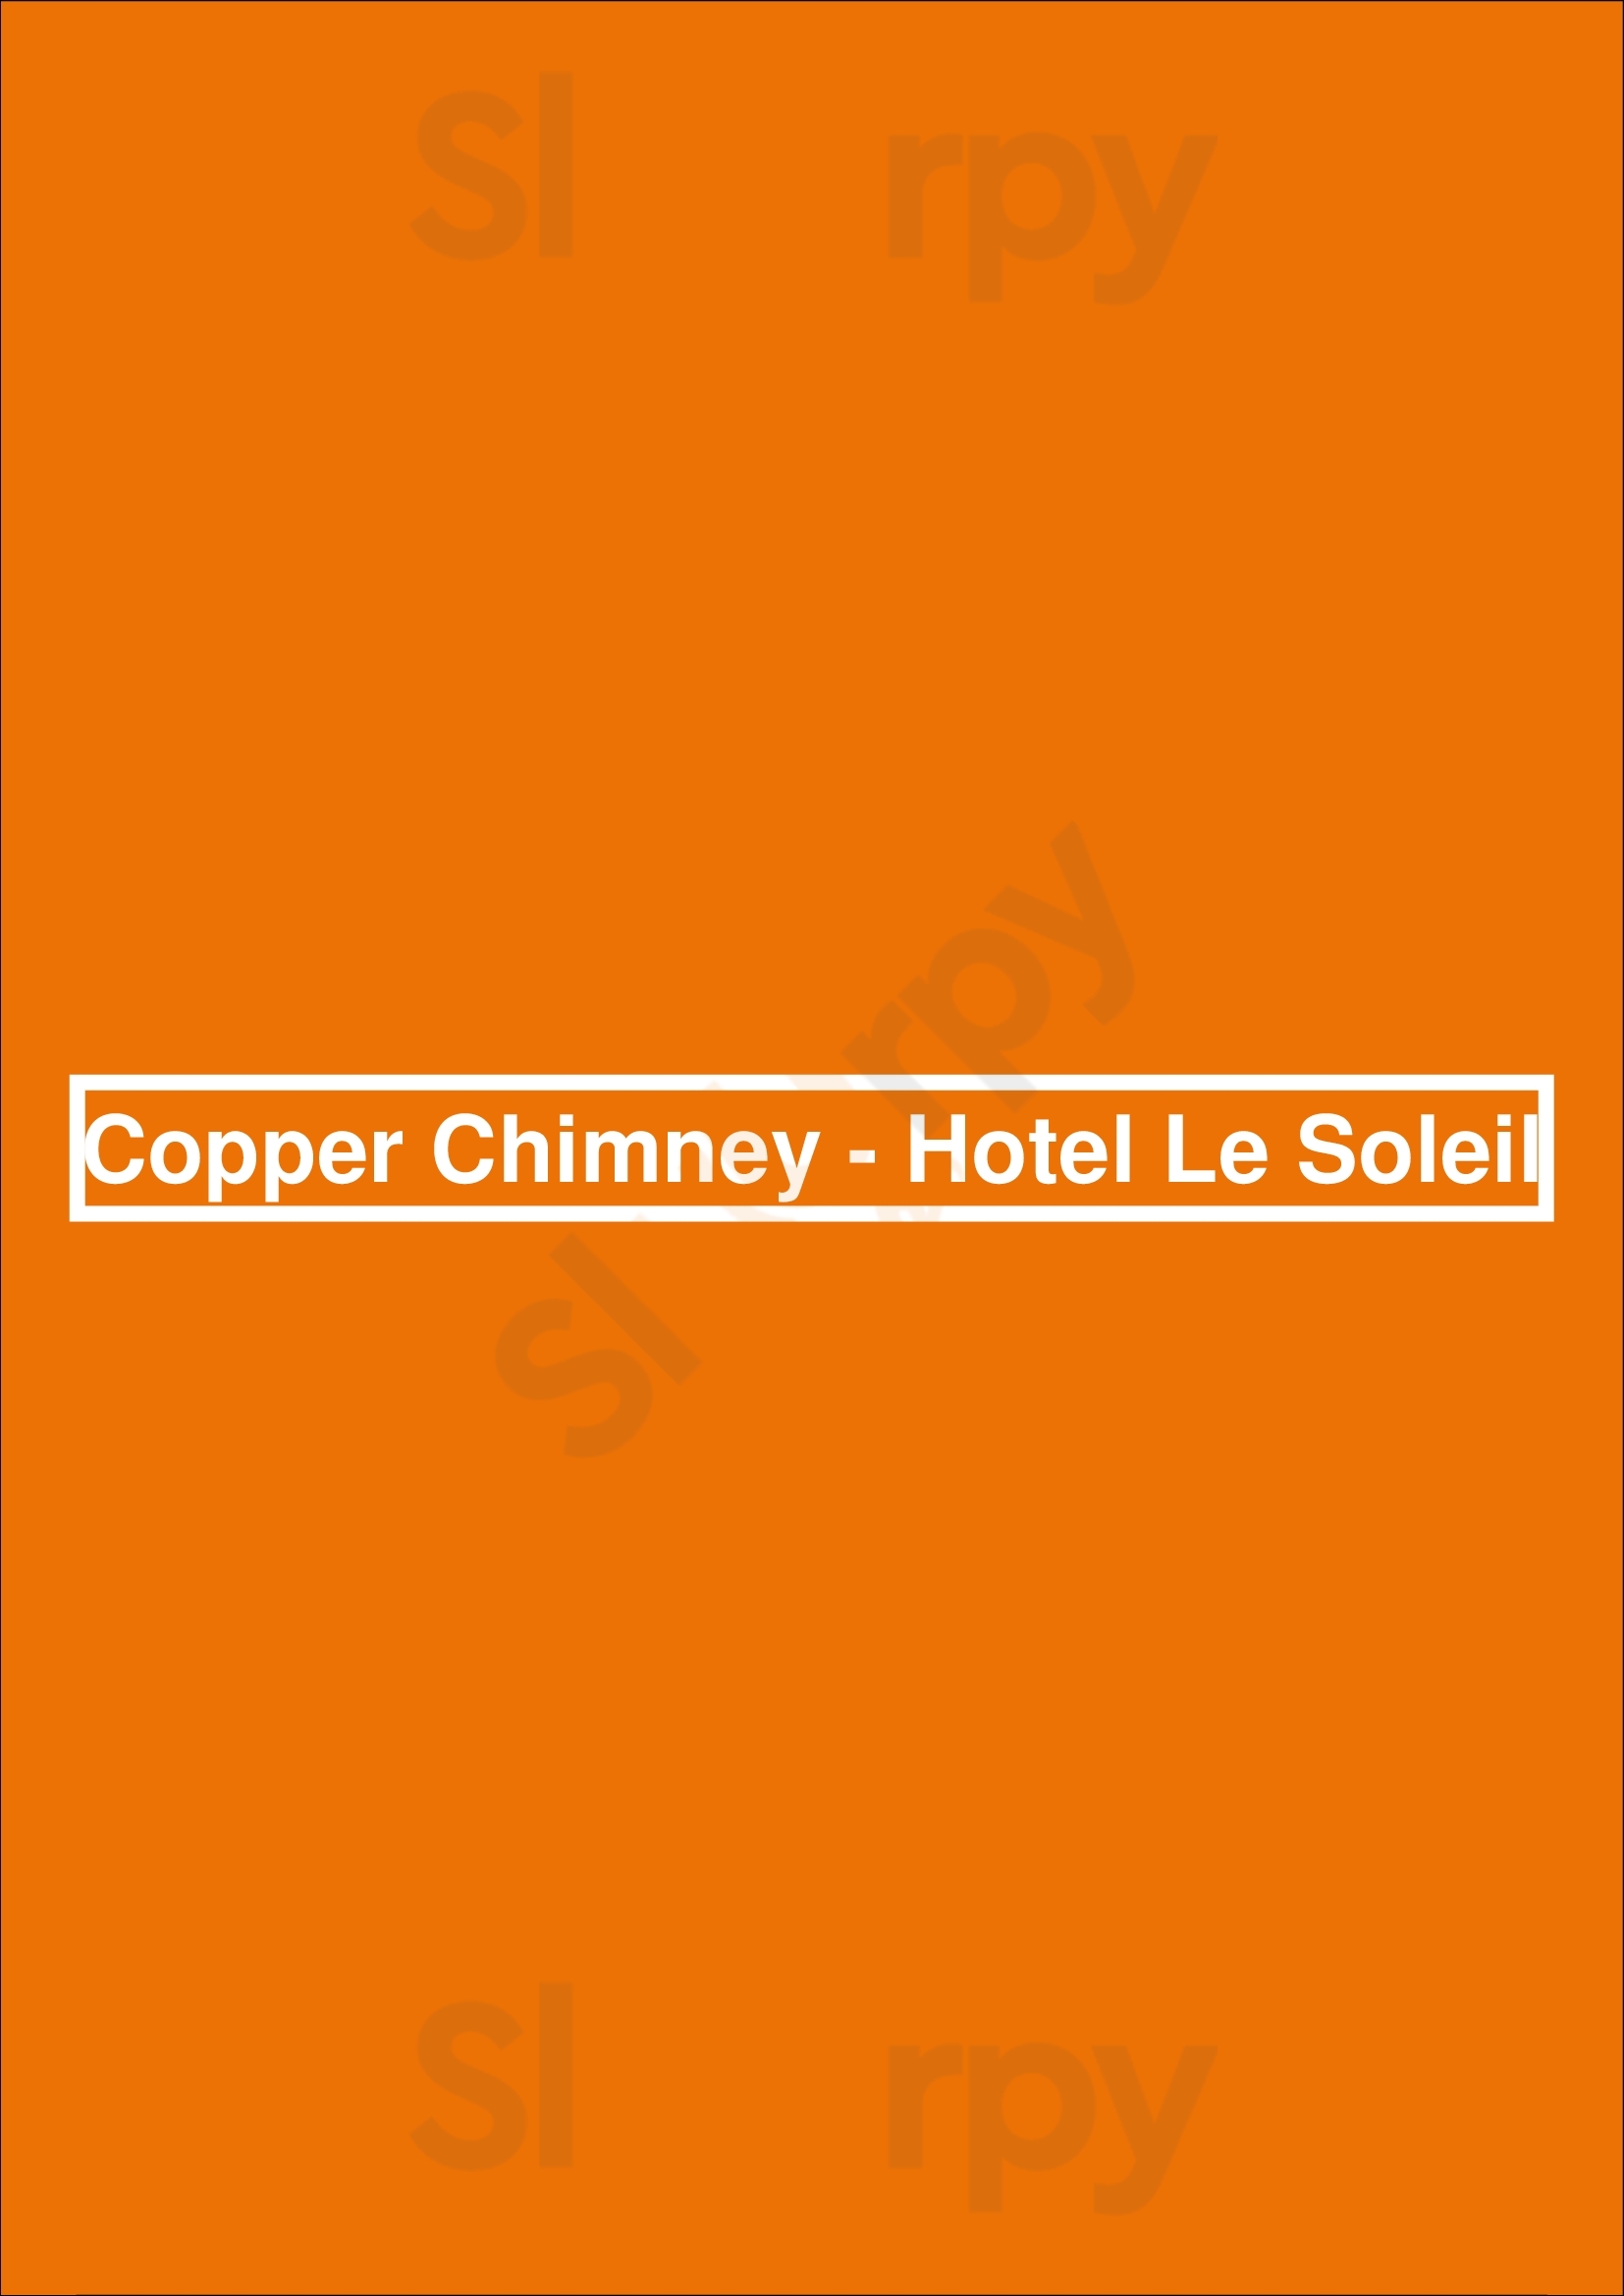 Copper Chimney - Hotel Le Soleil Vancouver Menu - 1